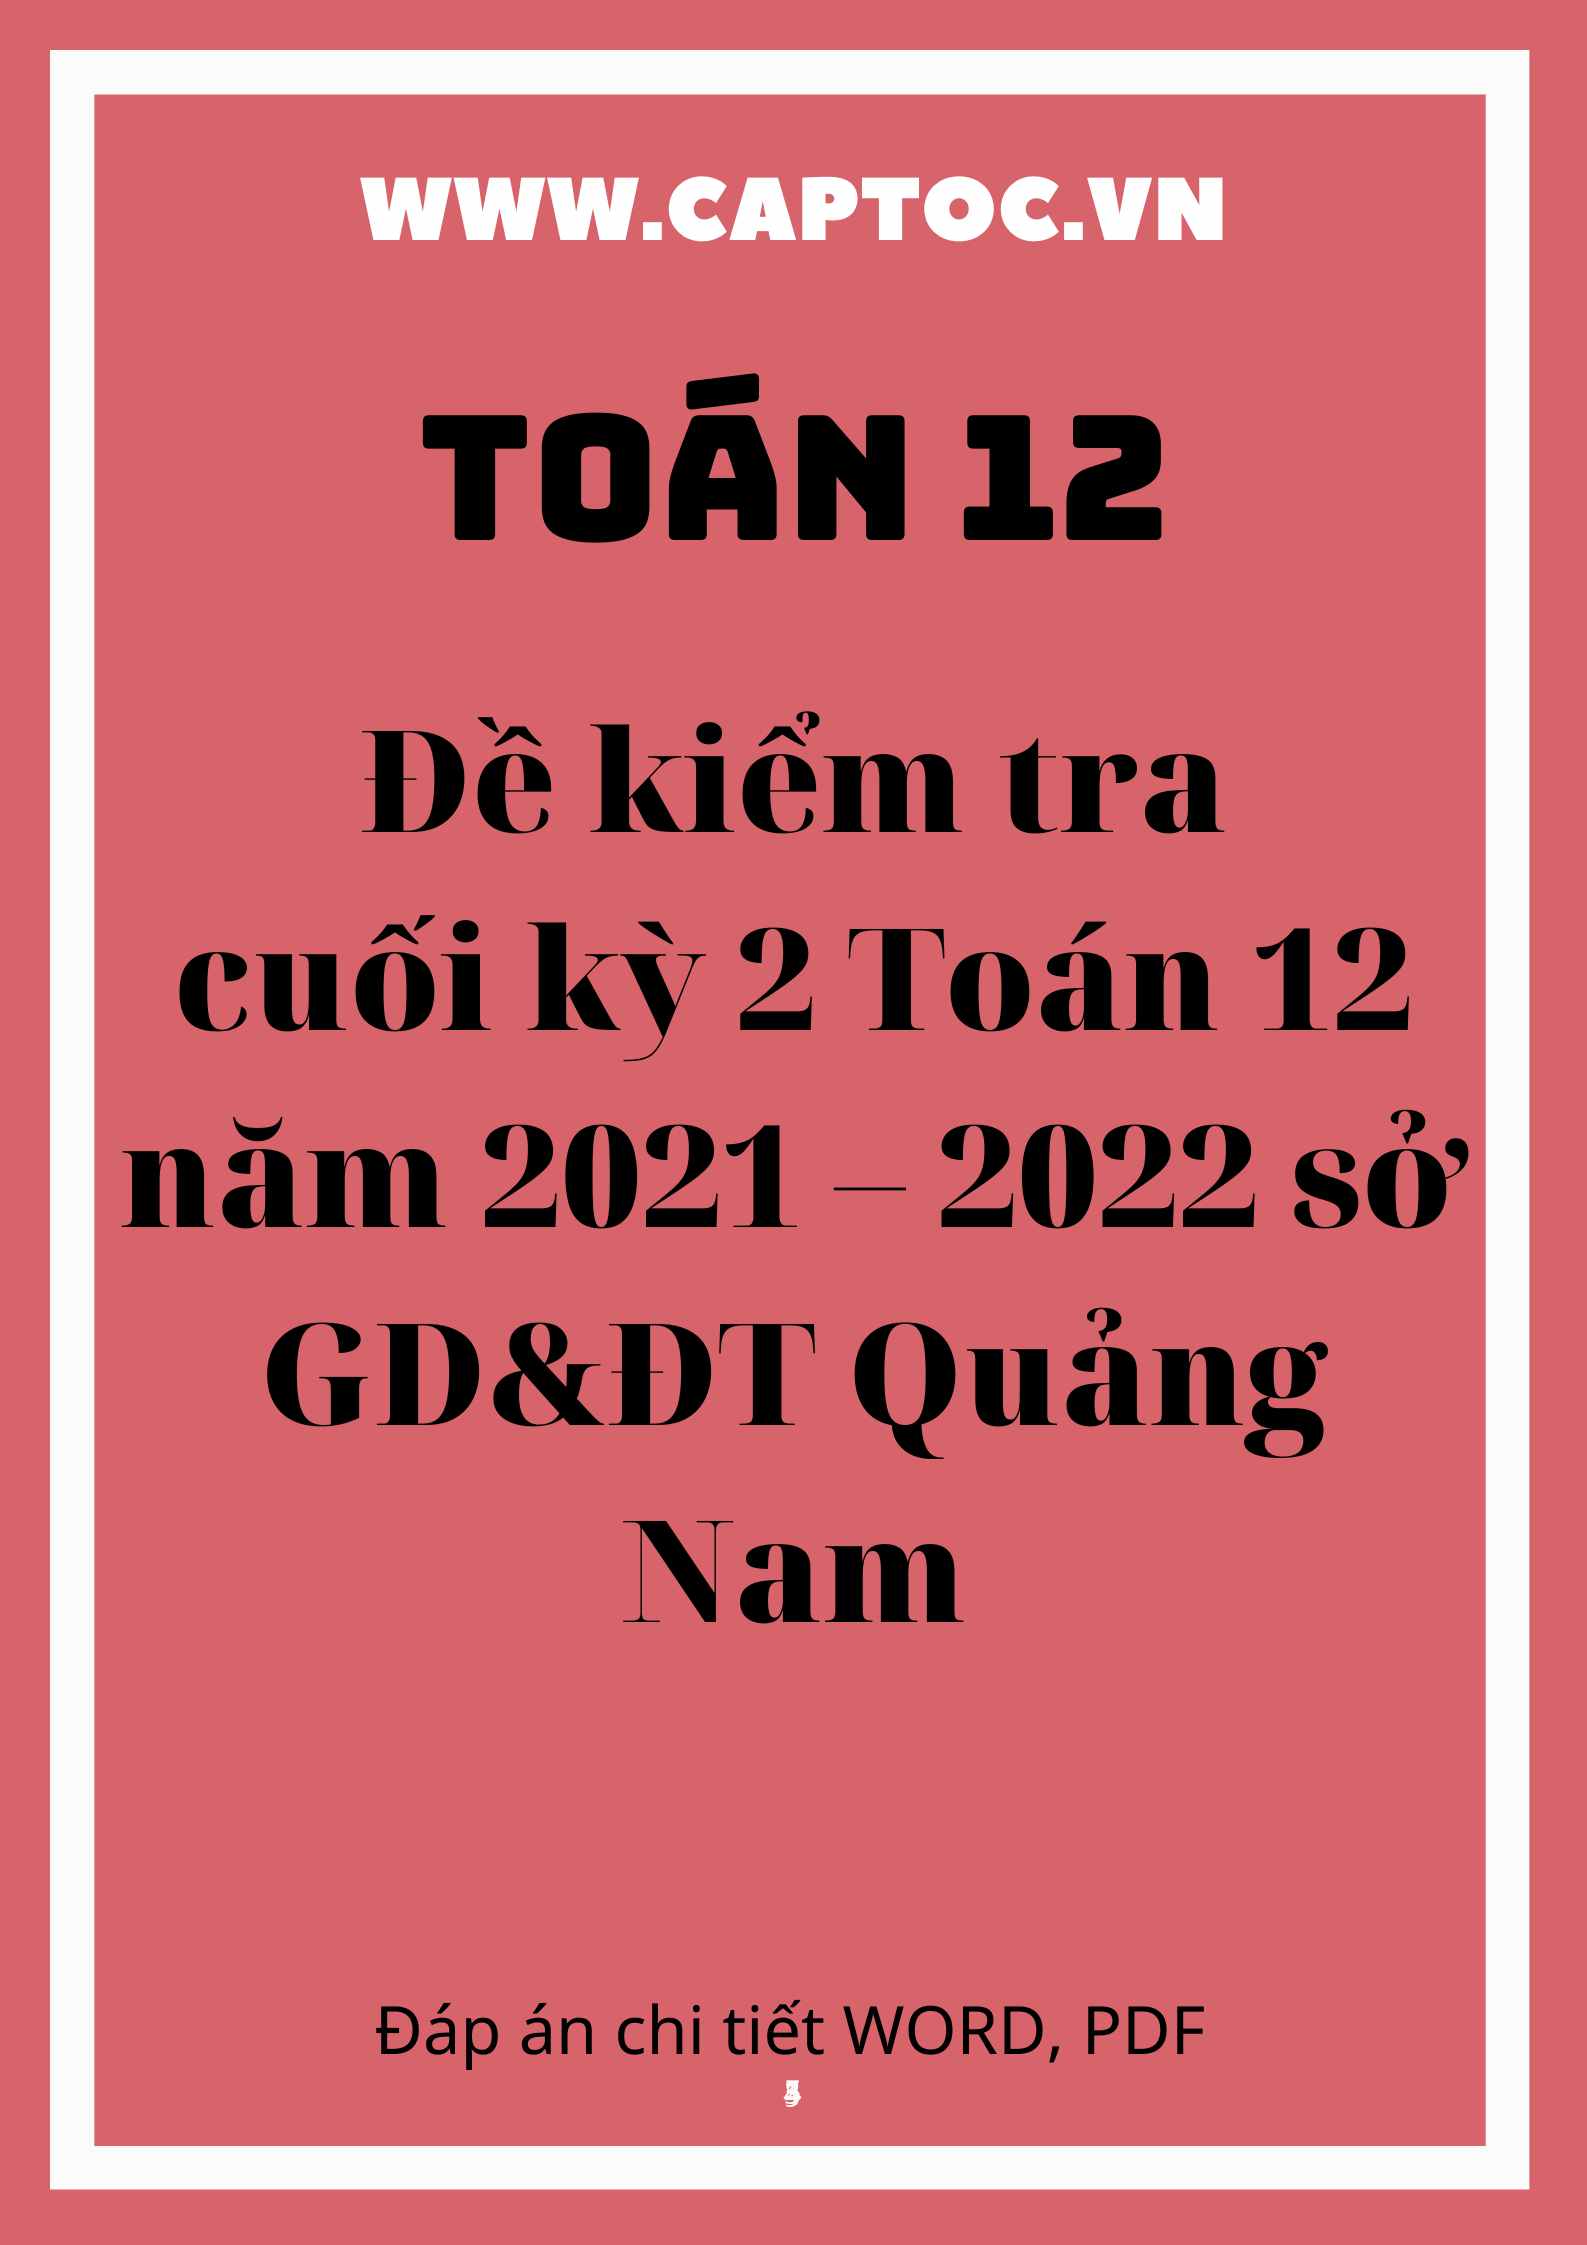 Đề kiểm tra cuối kỳ 2 Toán 12 năm 2021 – 2022 sở GD&ĐT Quảng Nam